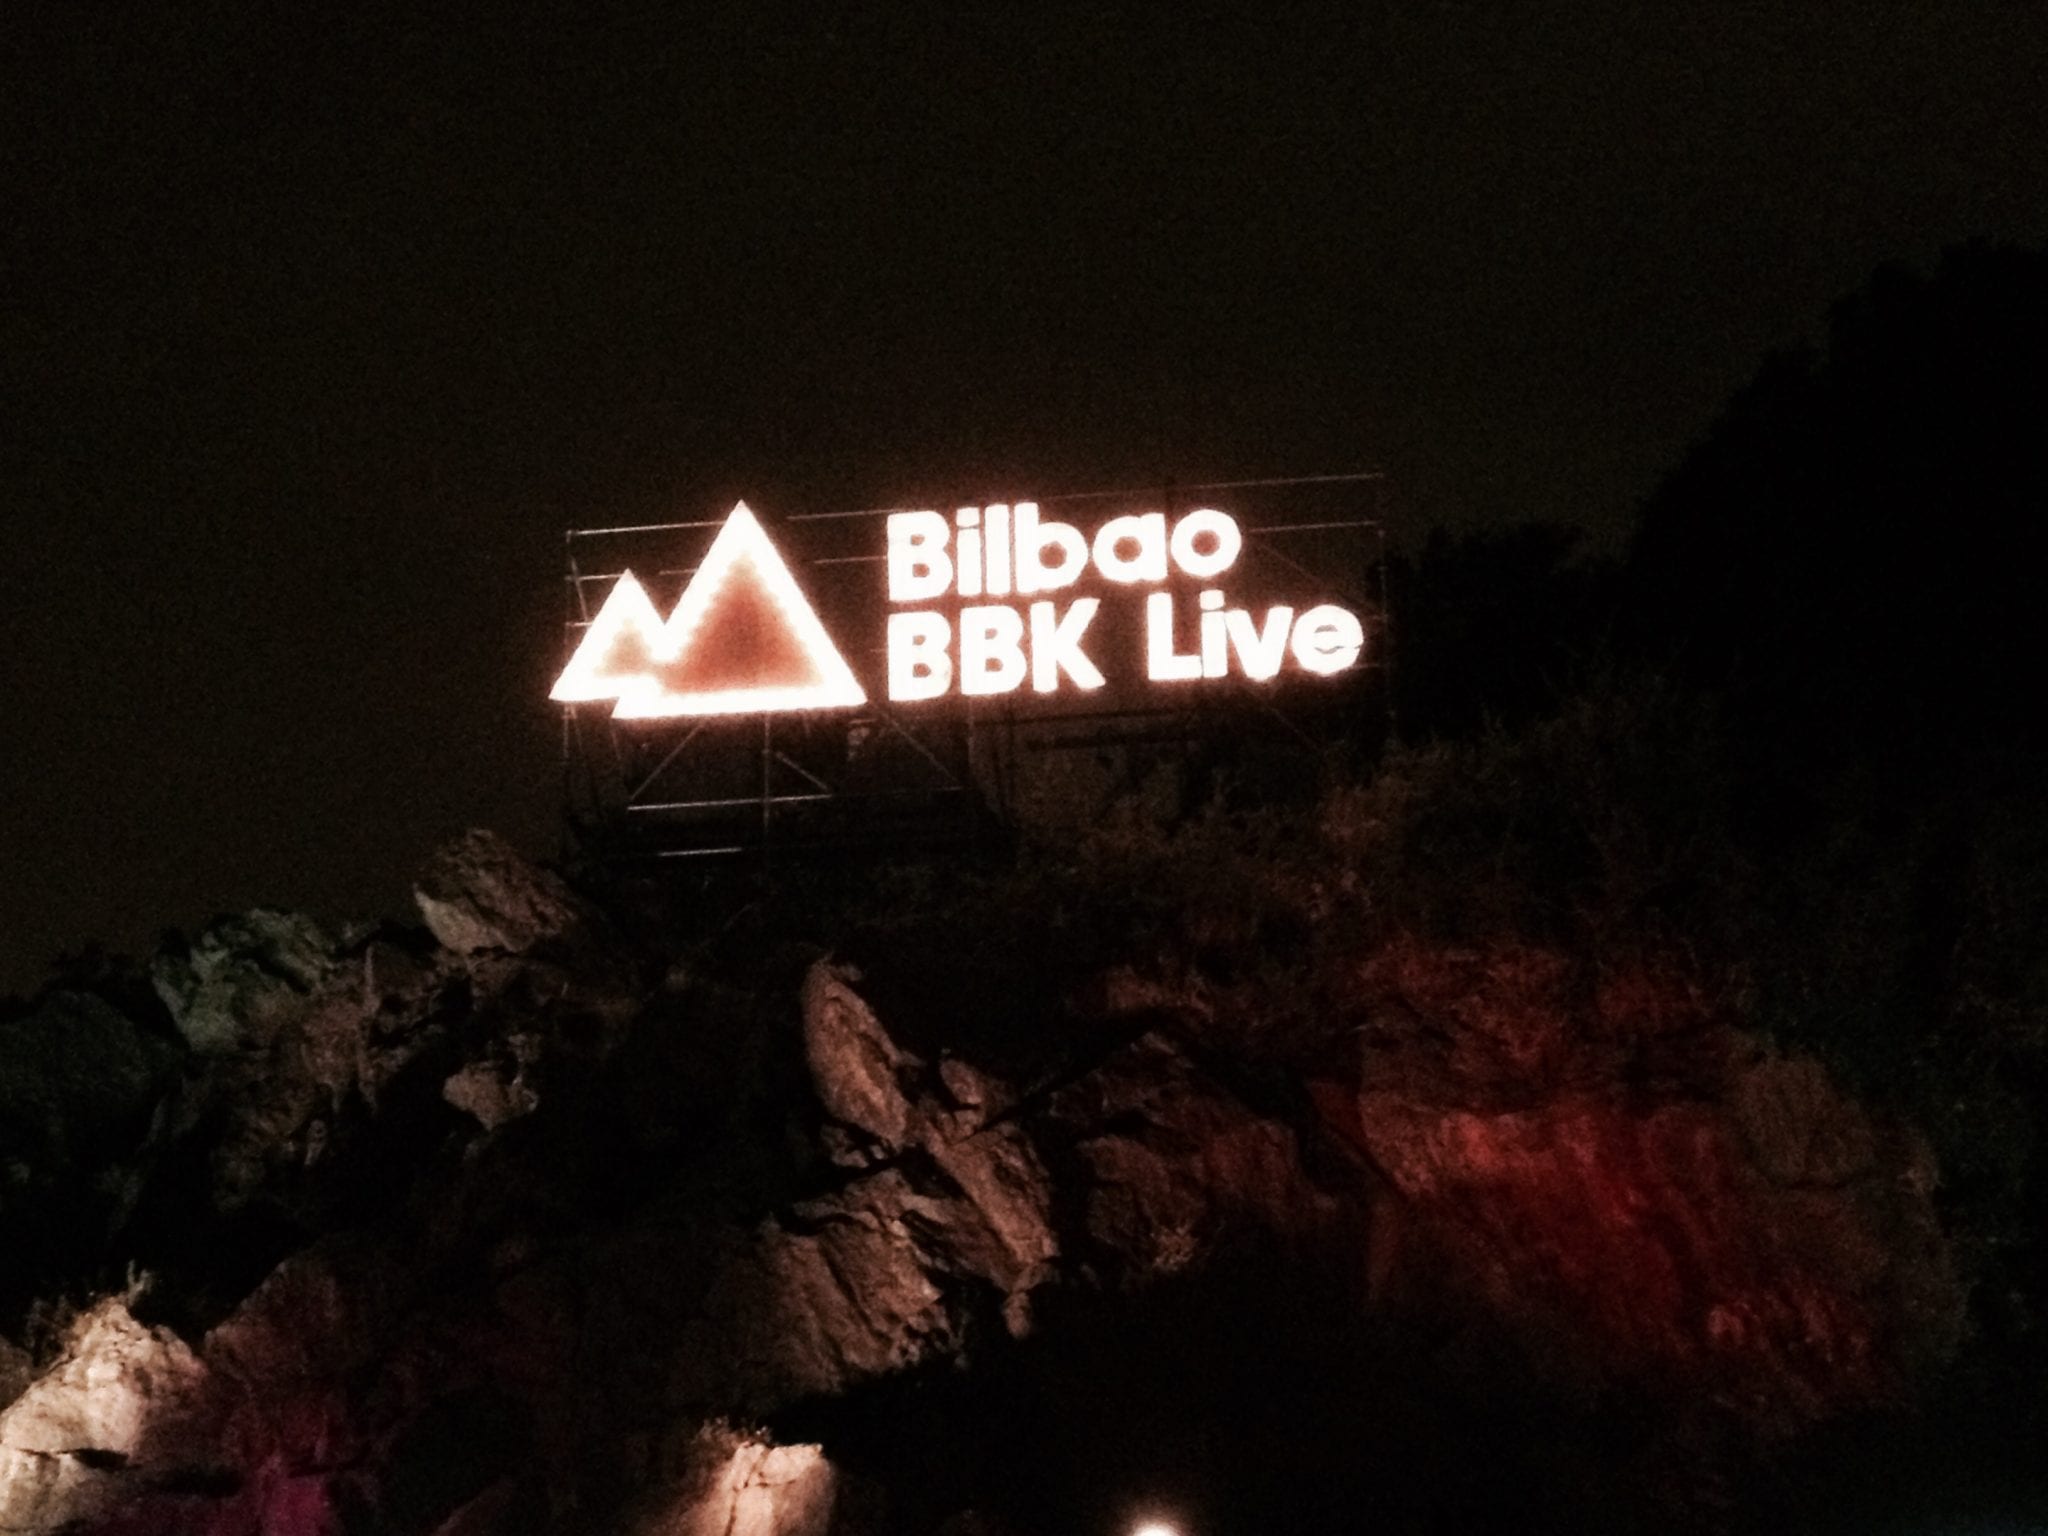 Crónica del Bilbao BBK Live del Viernes 10 de Julio de 2015